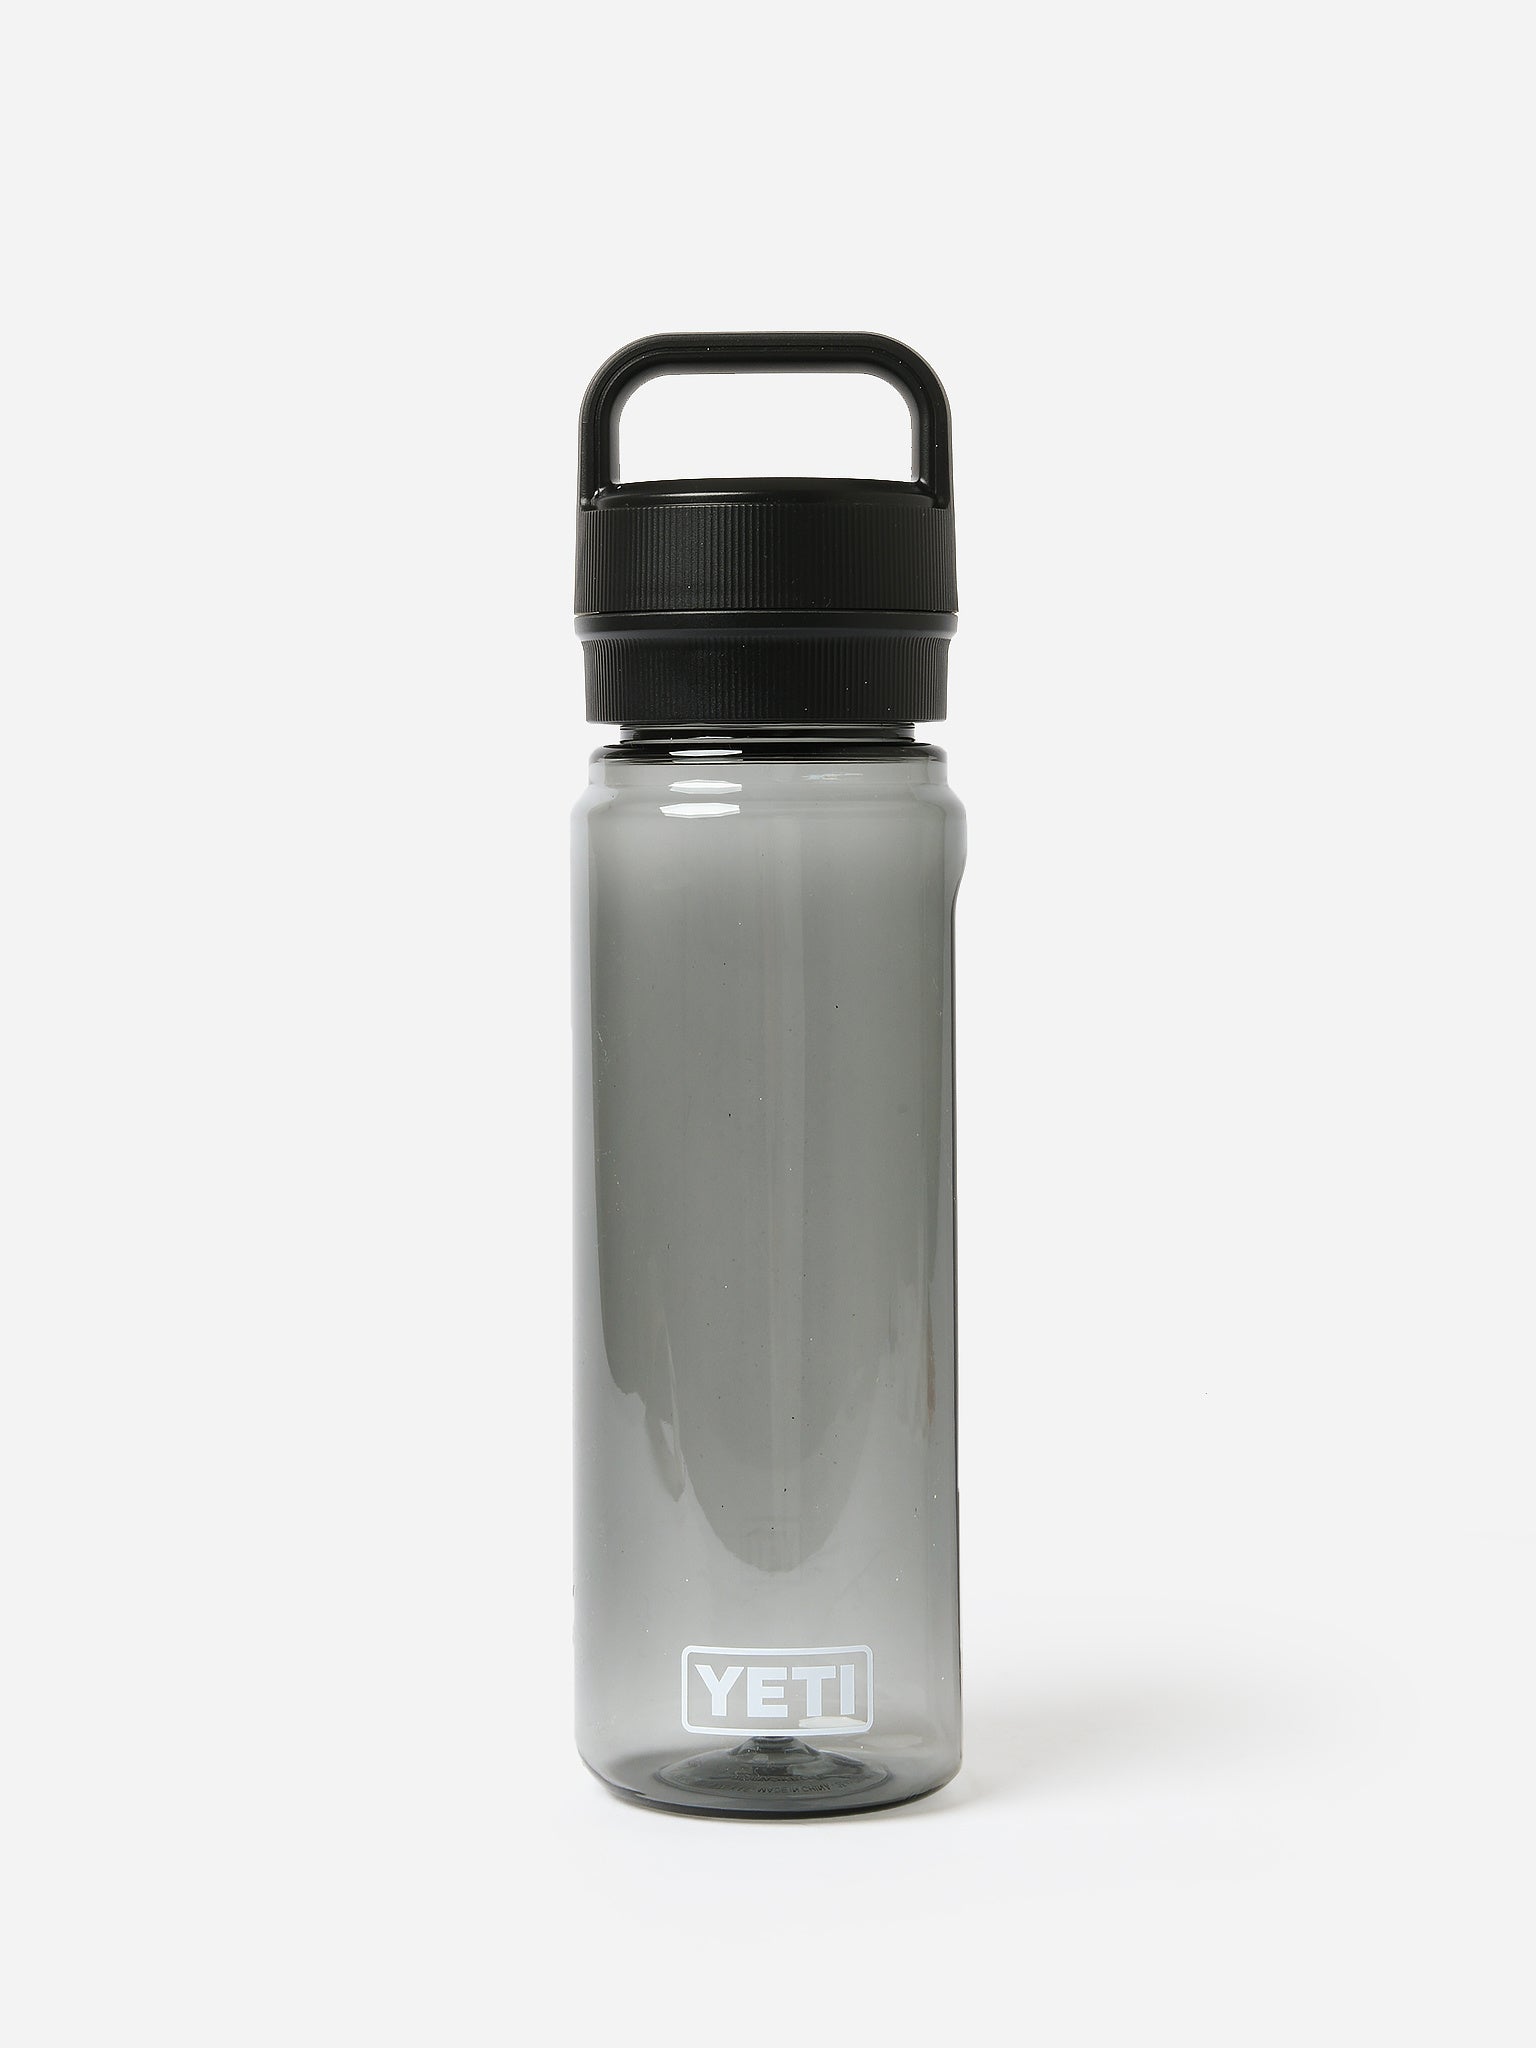 YETI Yonder 25oz Water Bottle - Power Pink